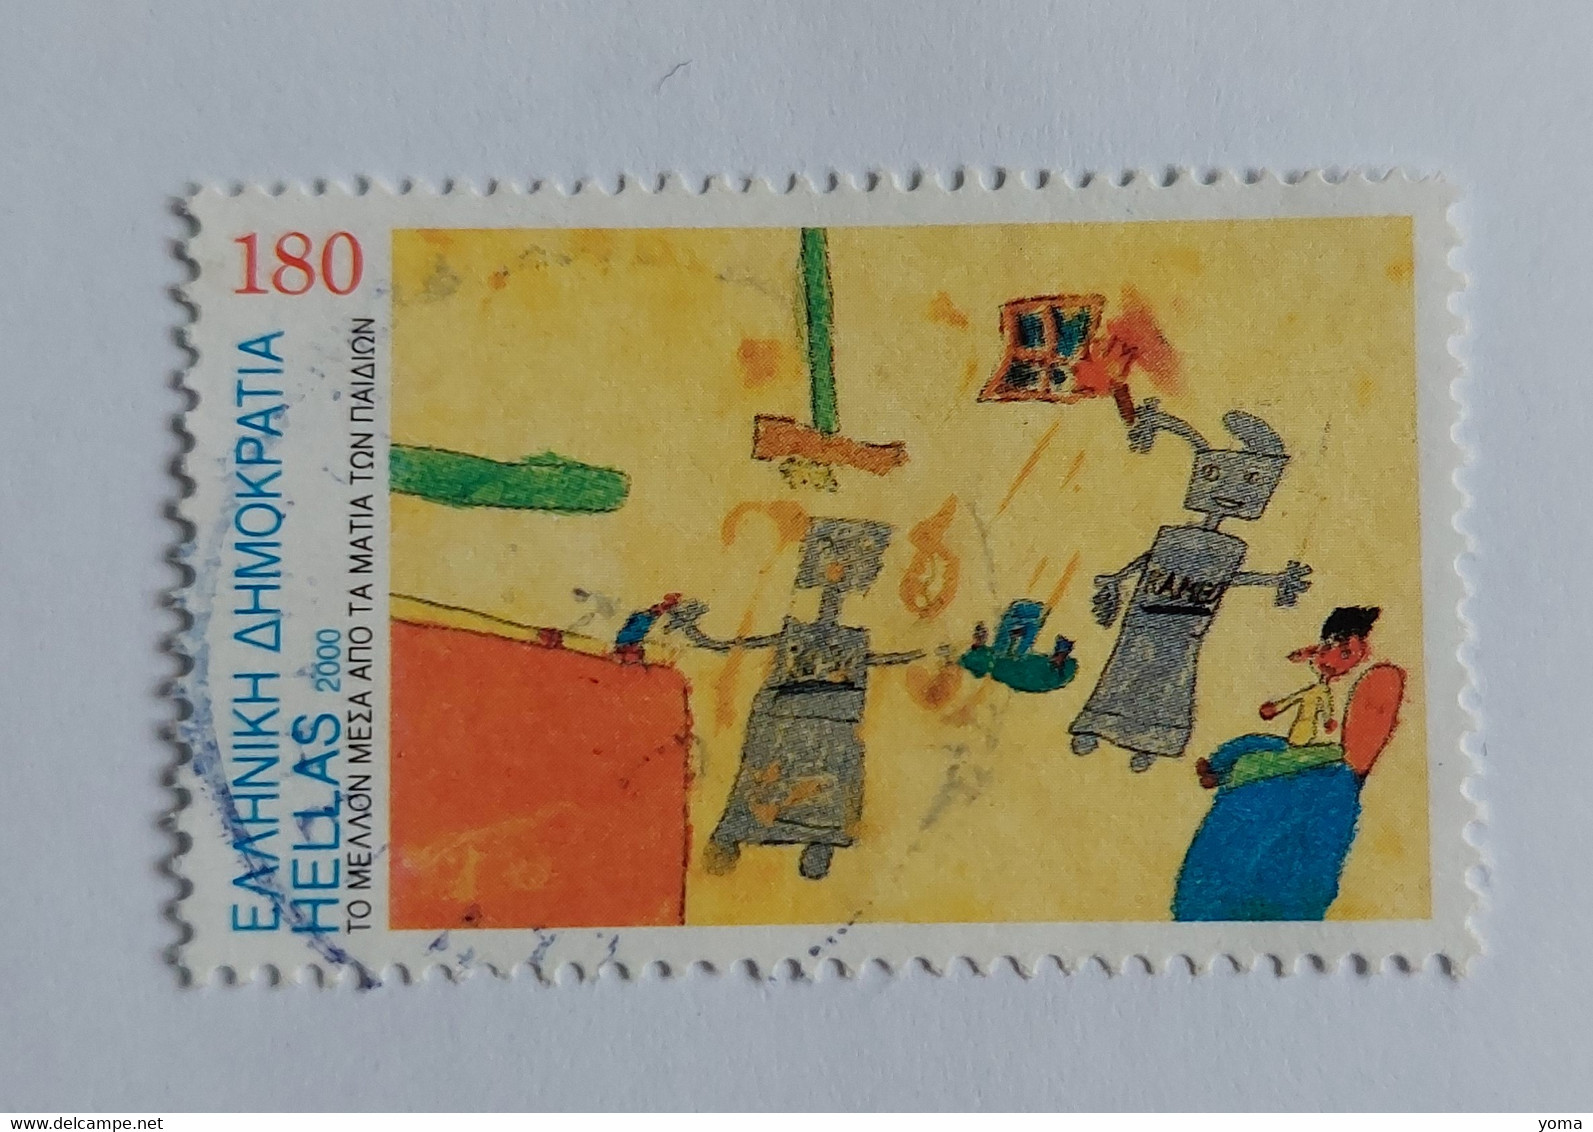 N° 2028       Dessin D'enfant Sur Le Futur - Robot - Used Stamps